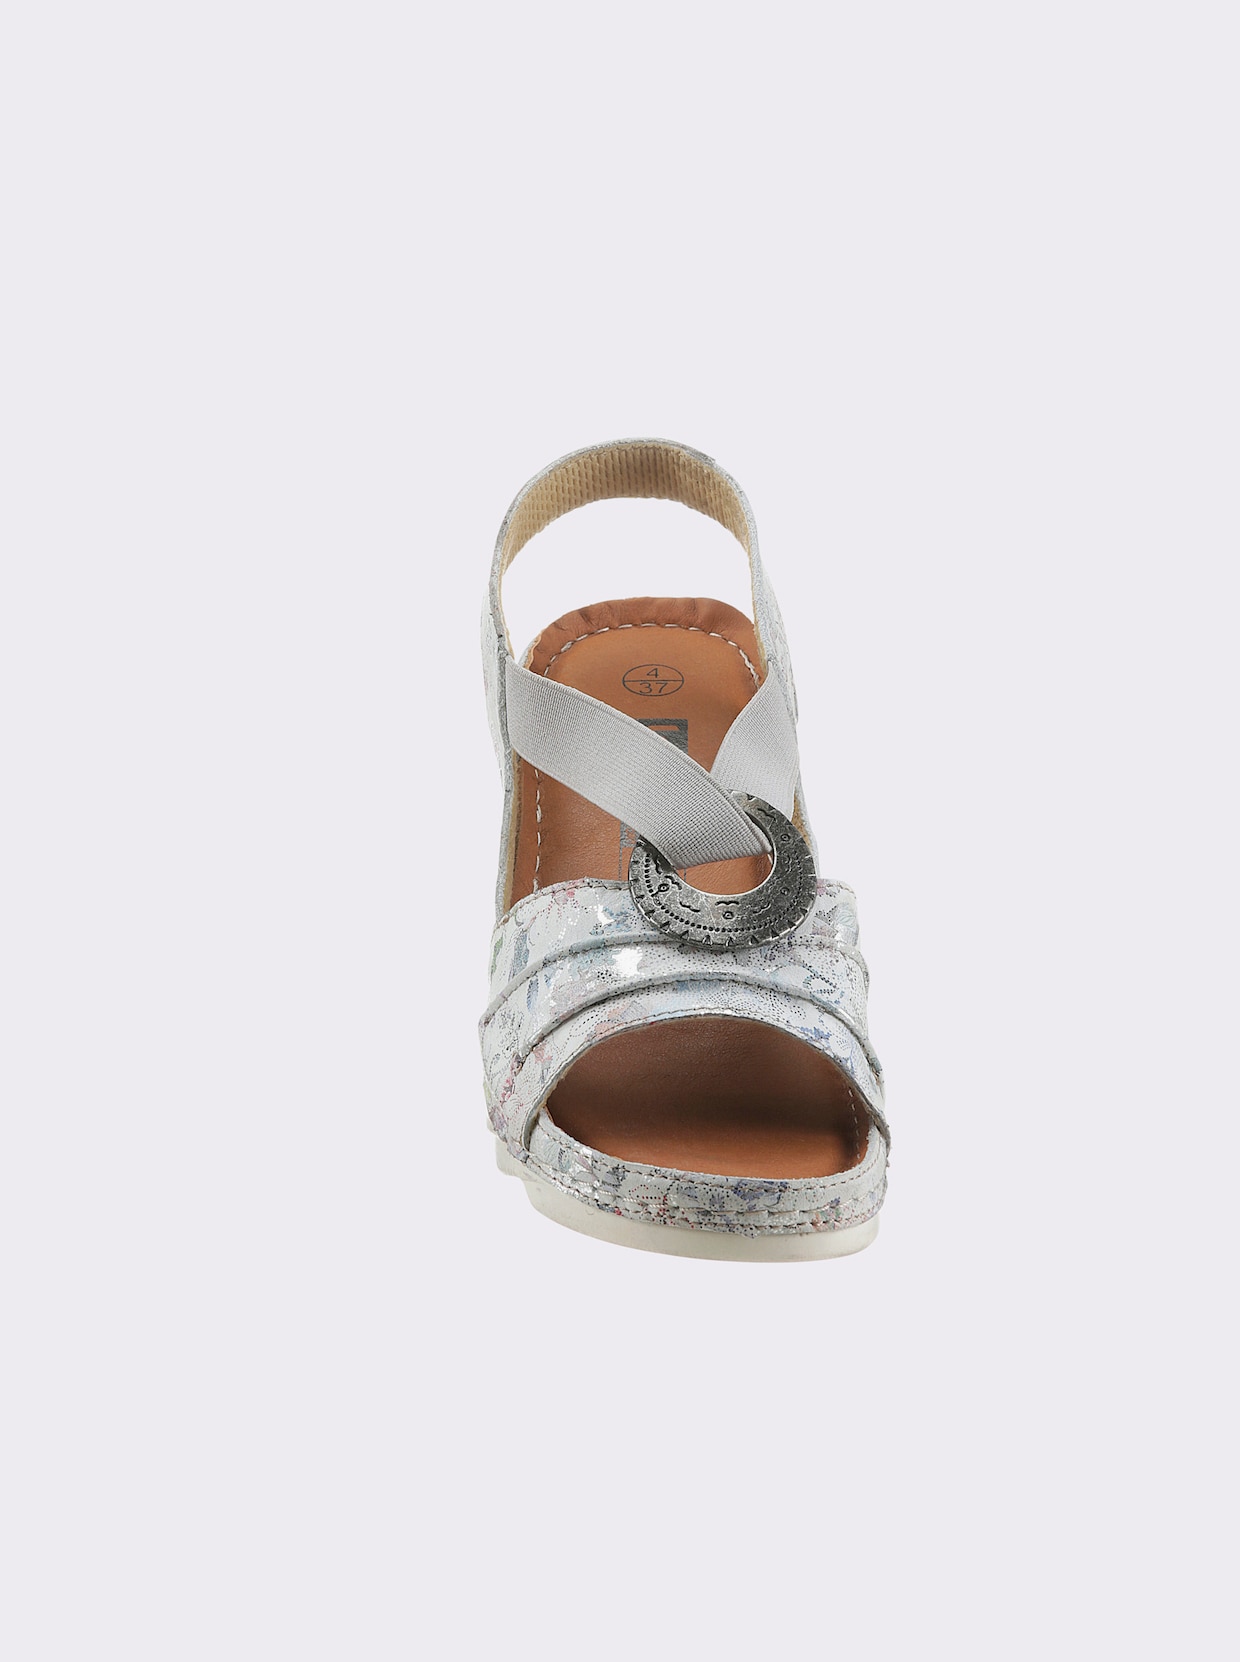 Airsoft Sandalette - weiß-bedruckt